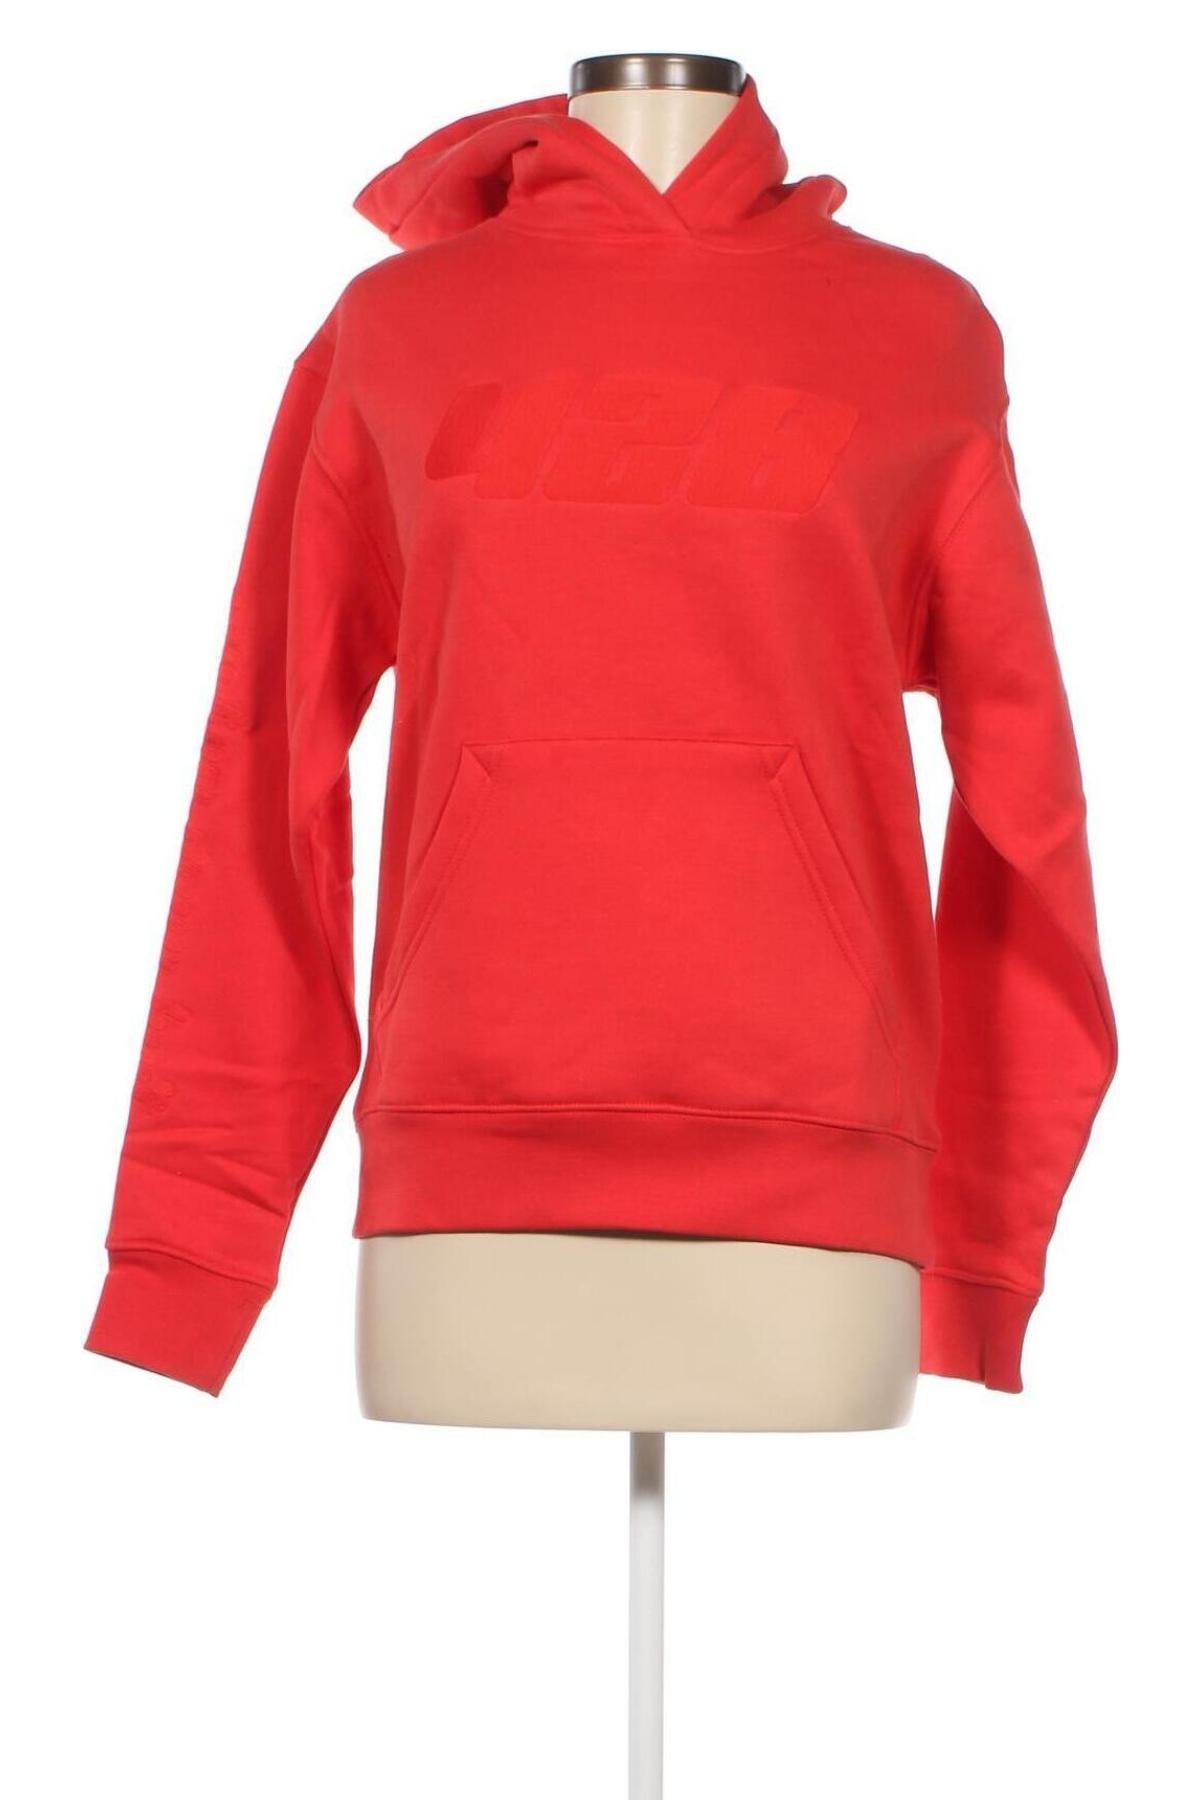 Γυναικείο φούτερ ABOUT YOU x Mero, Μέγεθος XS, Χρώμα Πορτοκαλί, Βαμβάκι, Τιμή 21,24 €